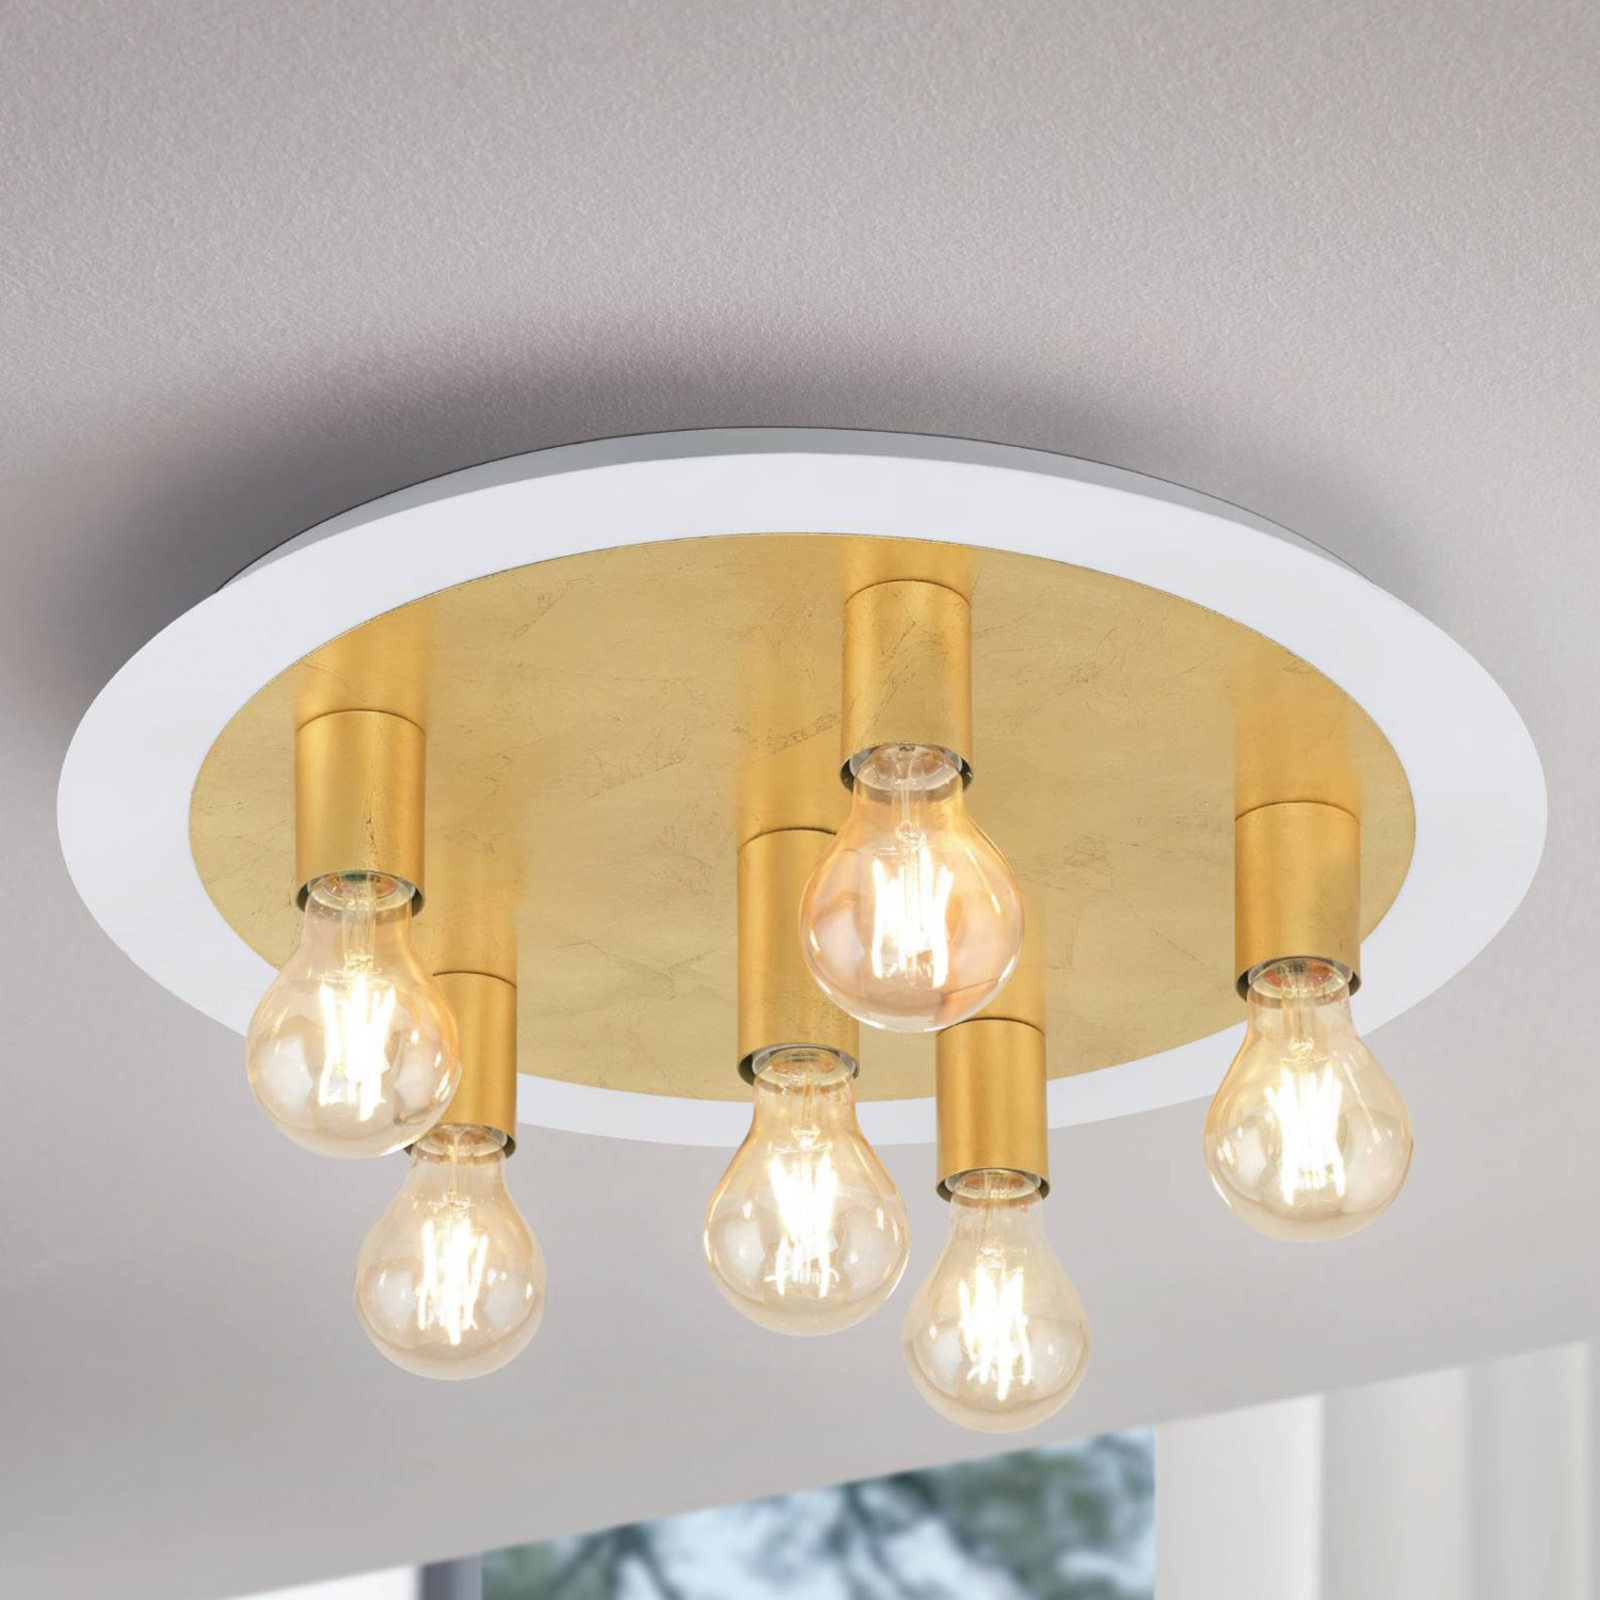 Passano LED ceiling light, 6-bulb, gold